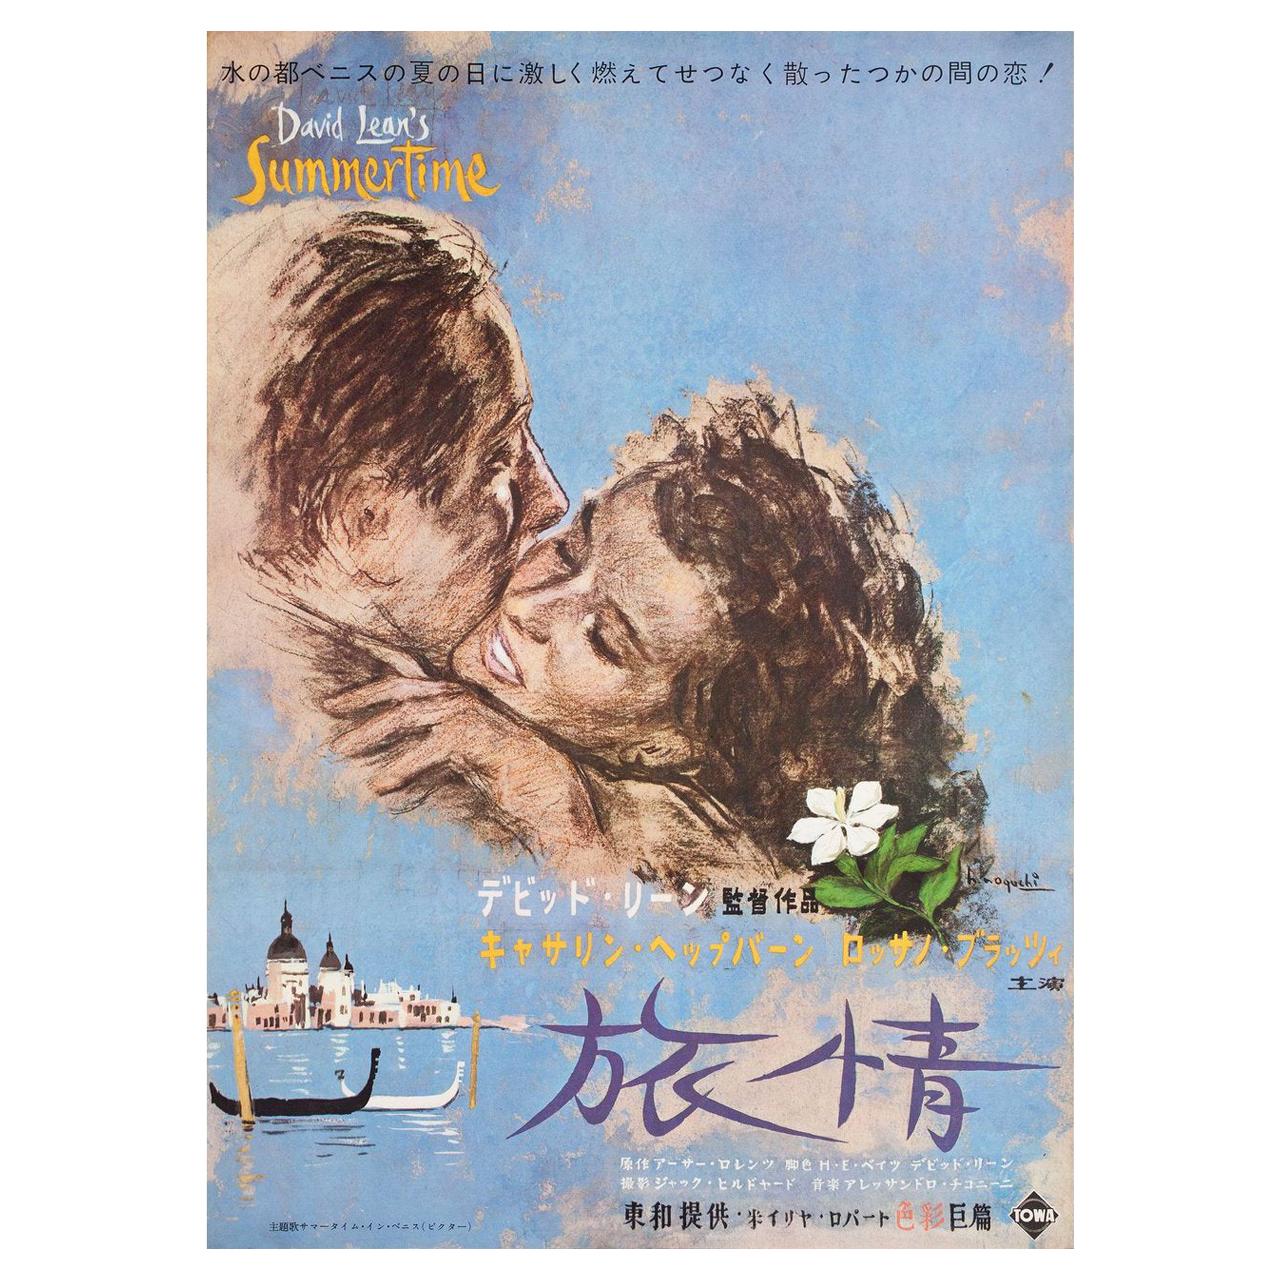 Summertime 1955 Japanese B2 Film Poster